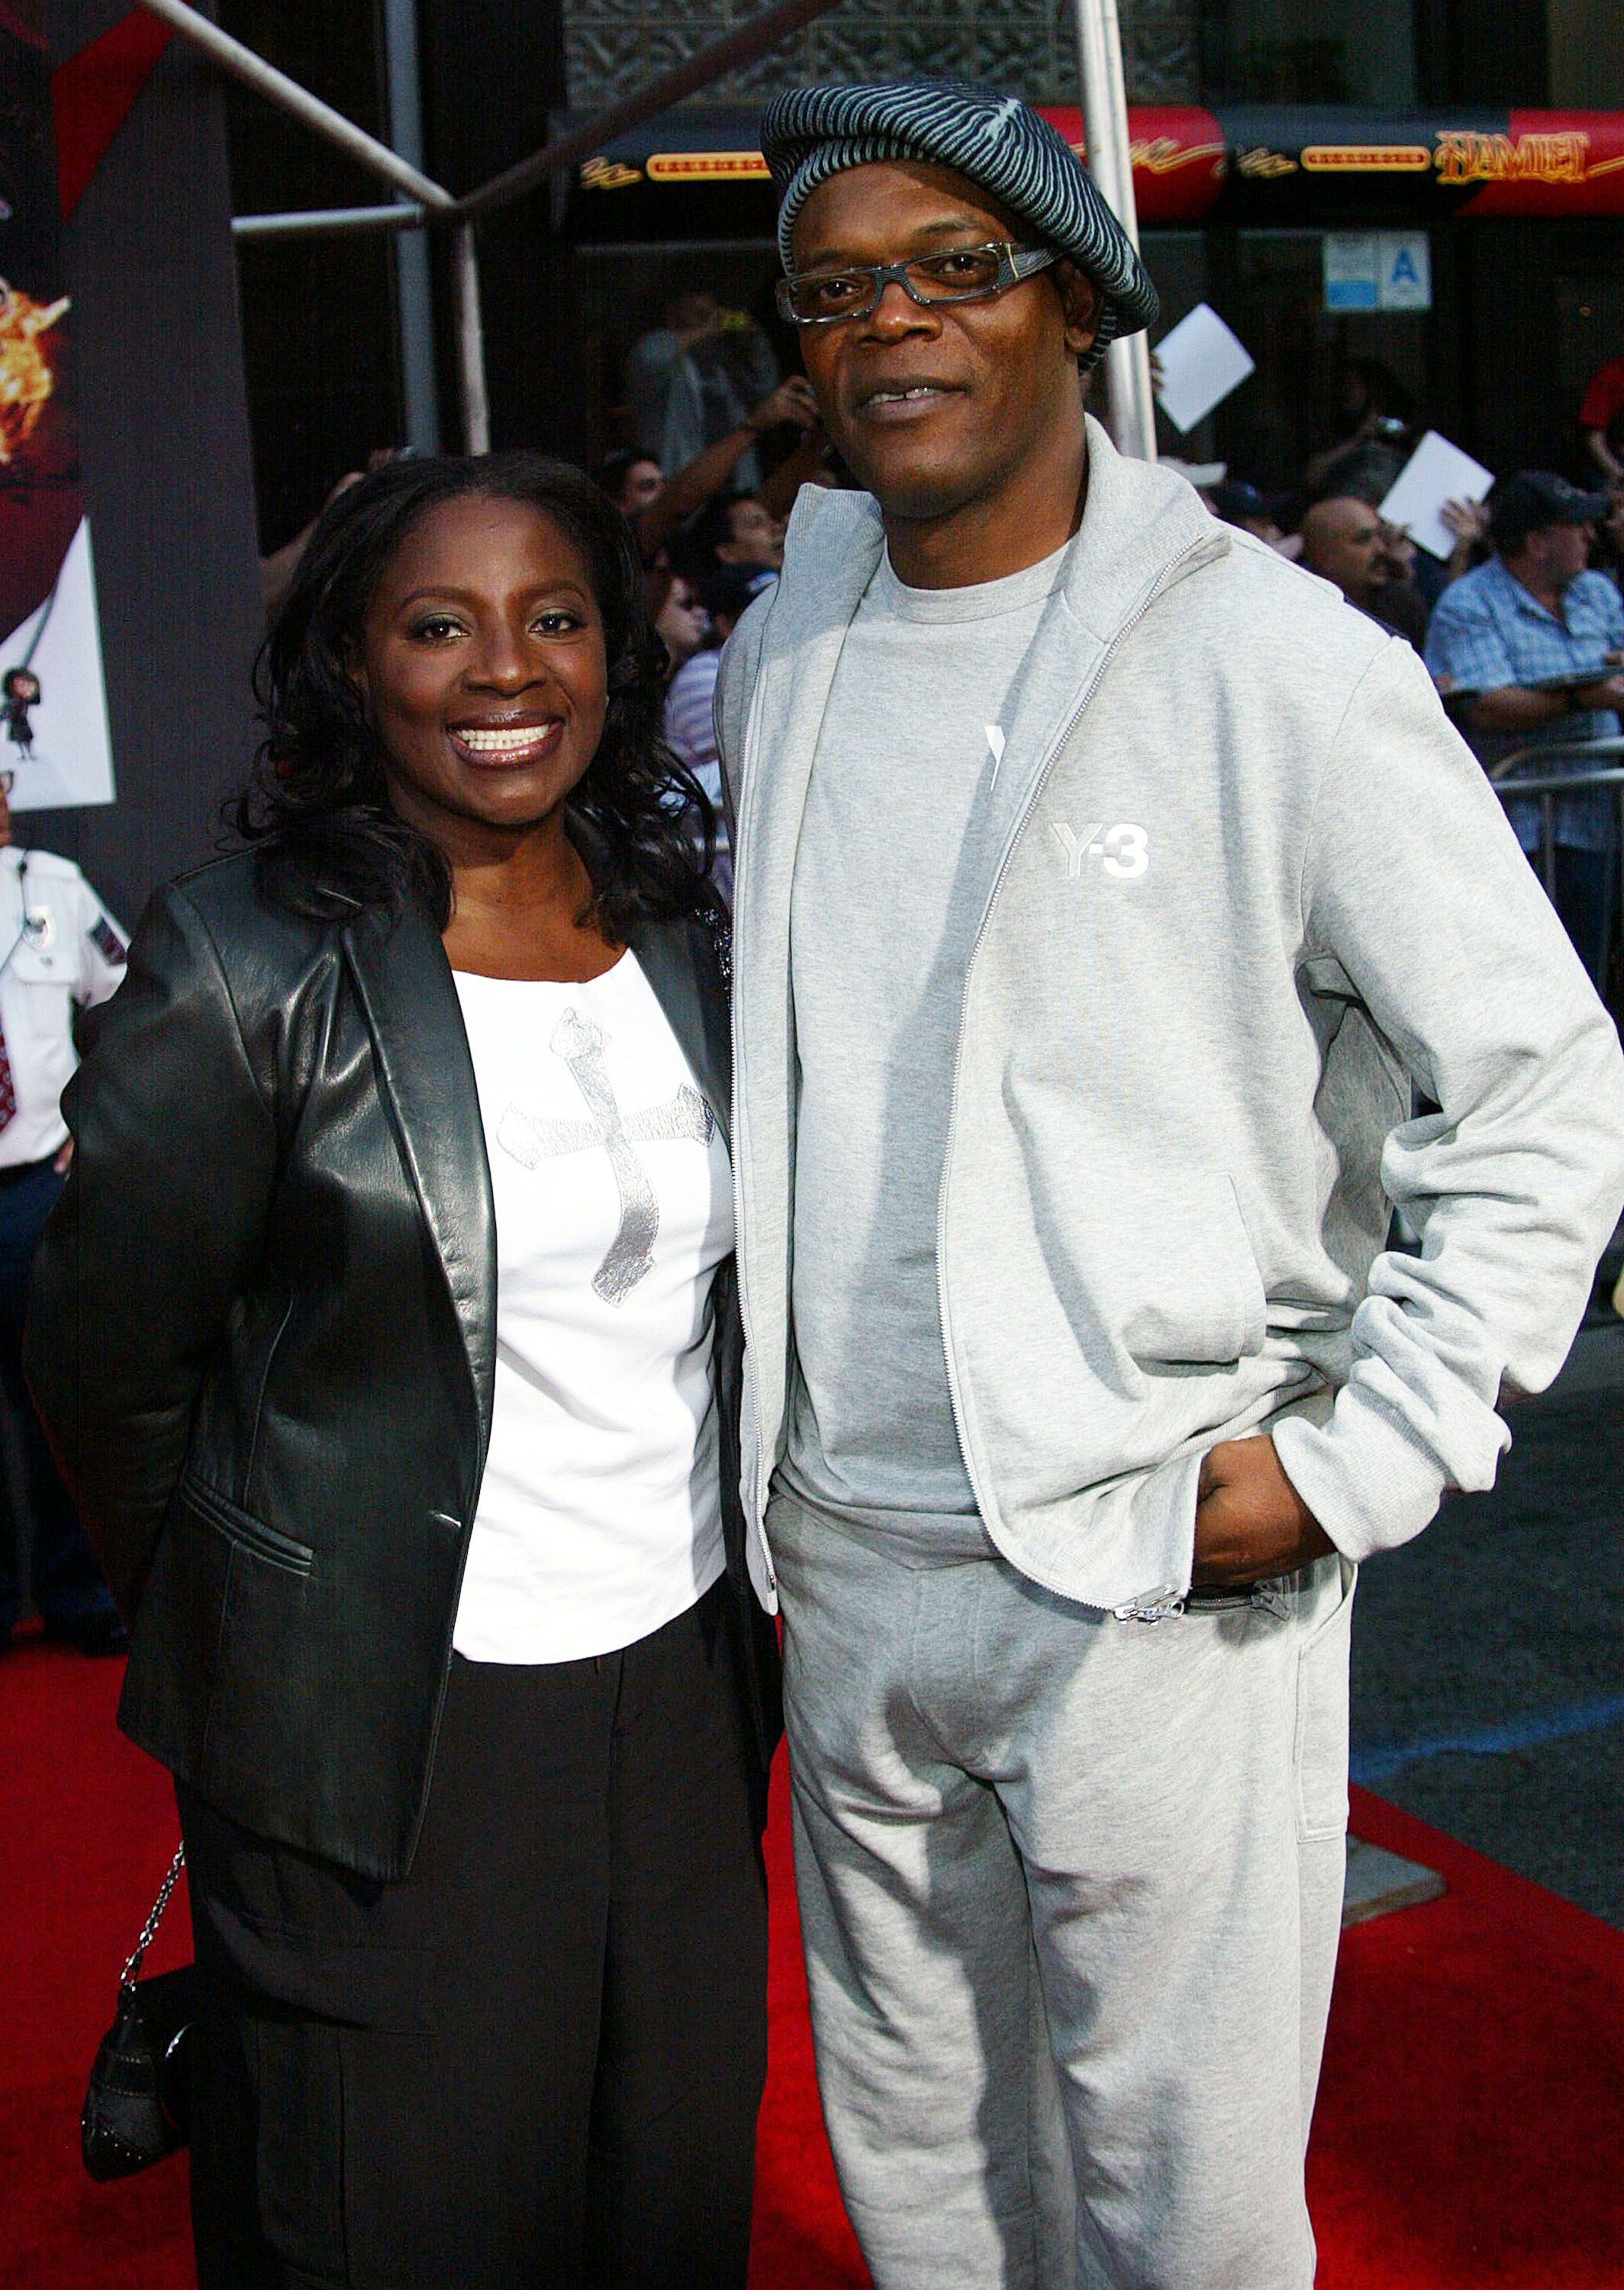 Samuel L. Jackson und seine Frau LaTanya Richardson bei der Filmpremiere von "The Incredibles" in Hollywood, Kalifornien 2004 | Quelle: Getty Images